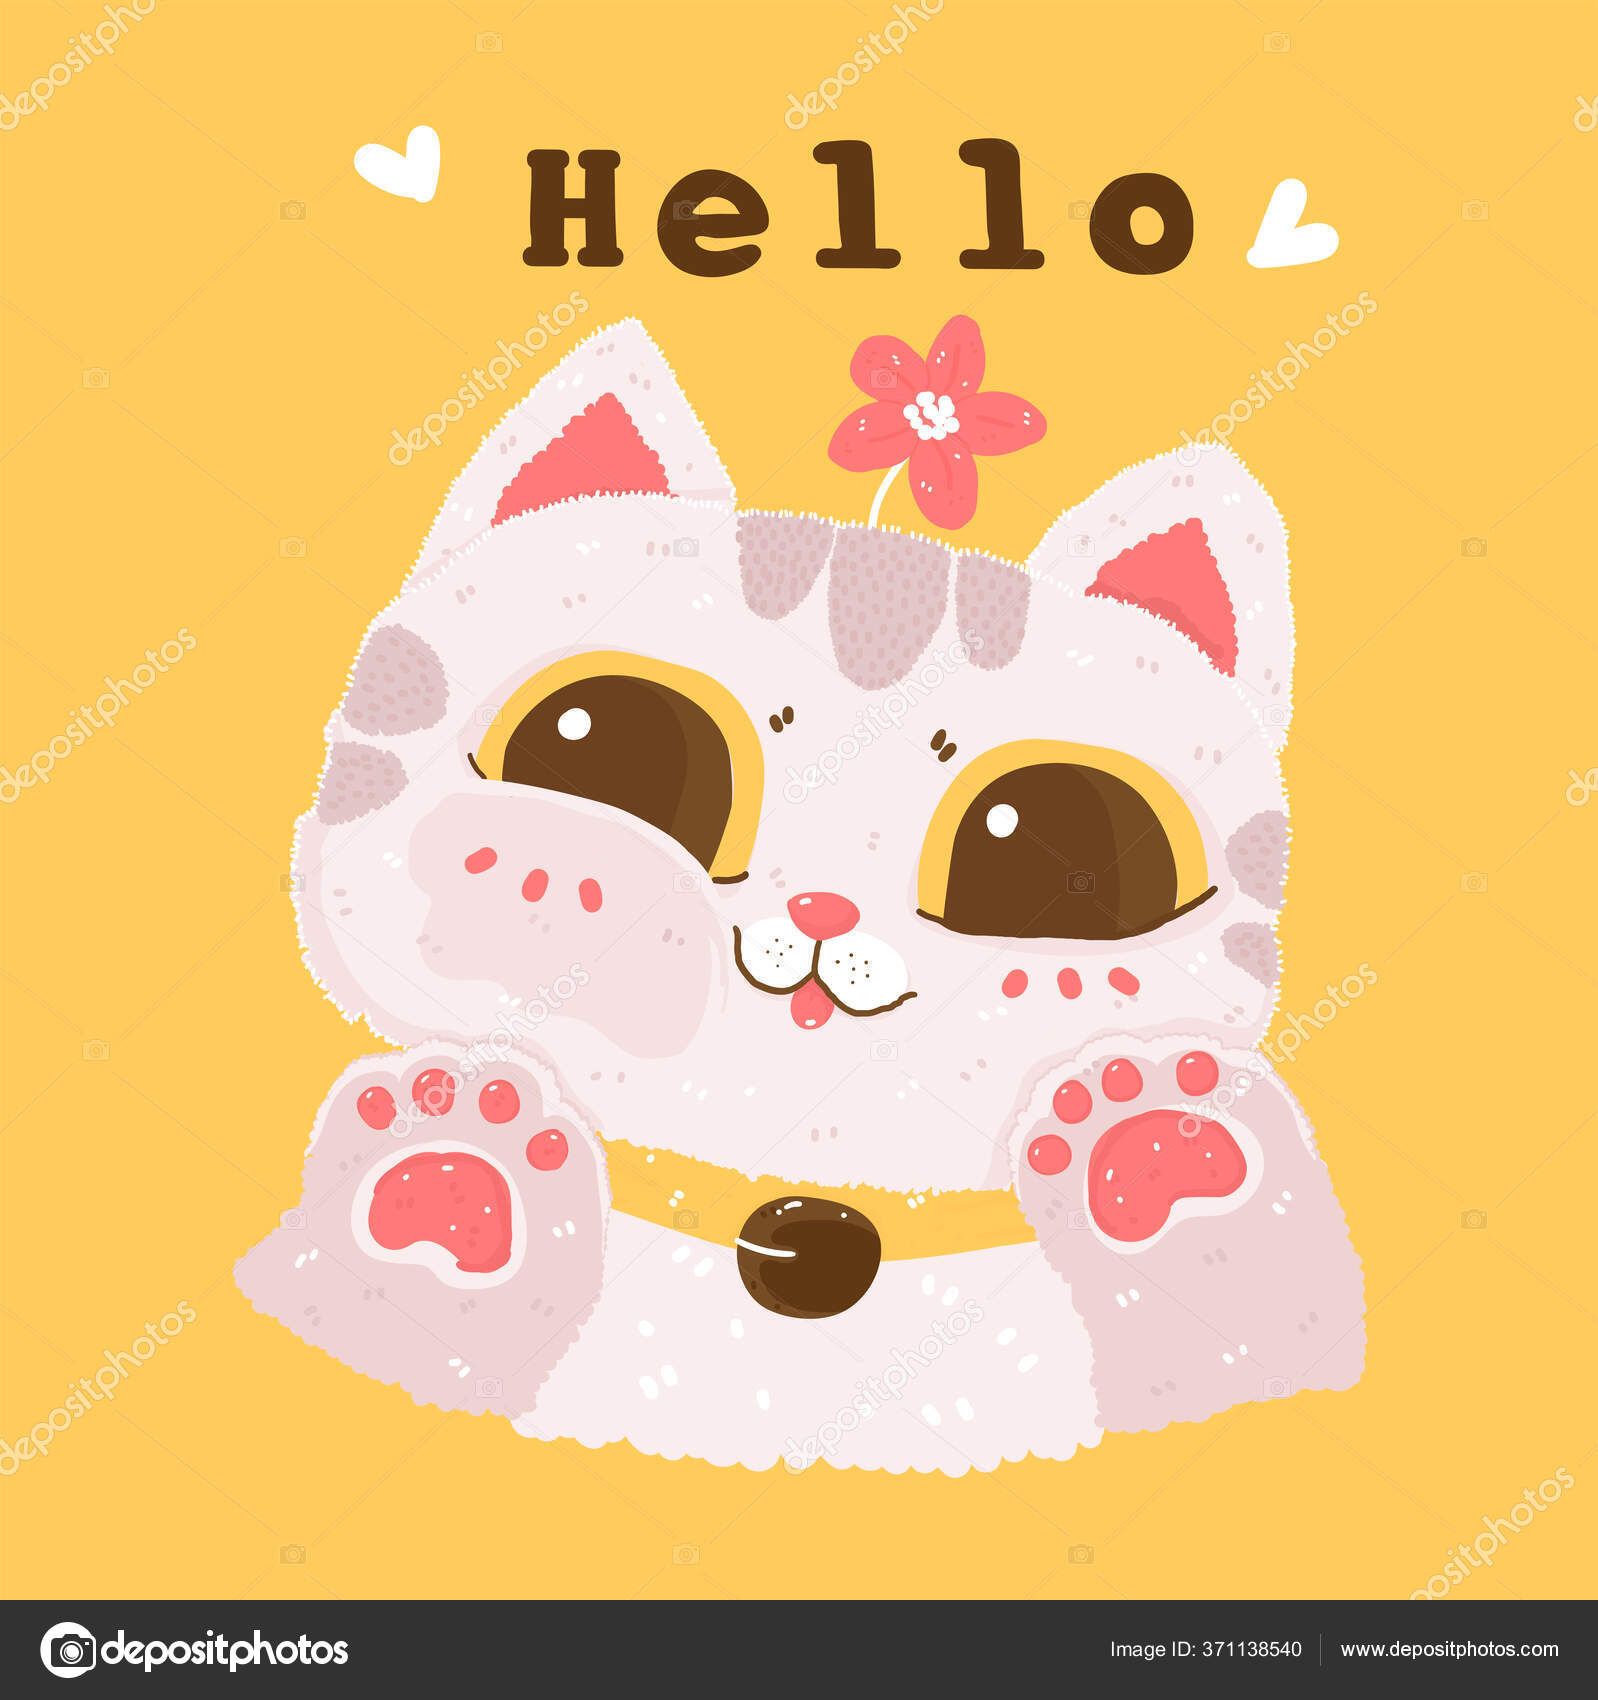 Clipart de sublimação de gatos fofos, ilustração de gato engraçado